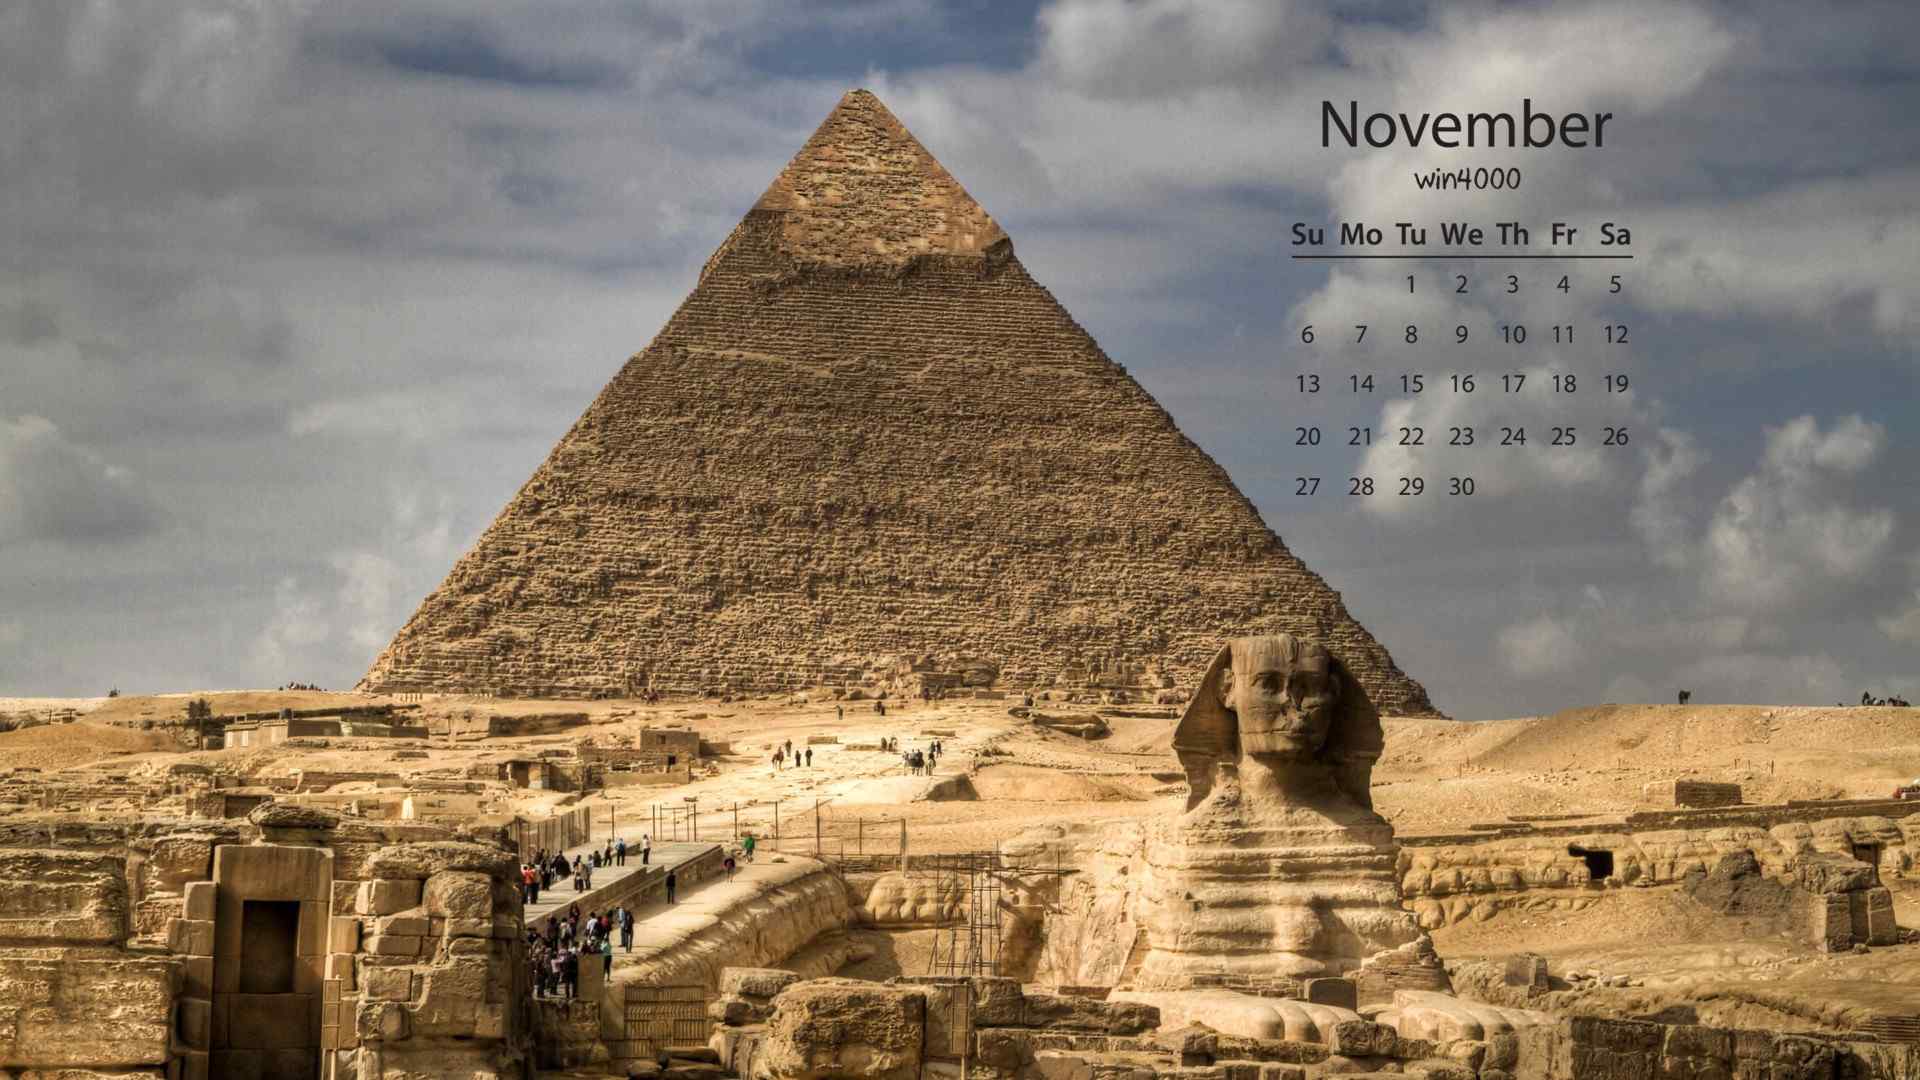 2016年11月日历埃及金字塔桌面壁纸图集